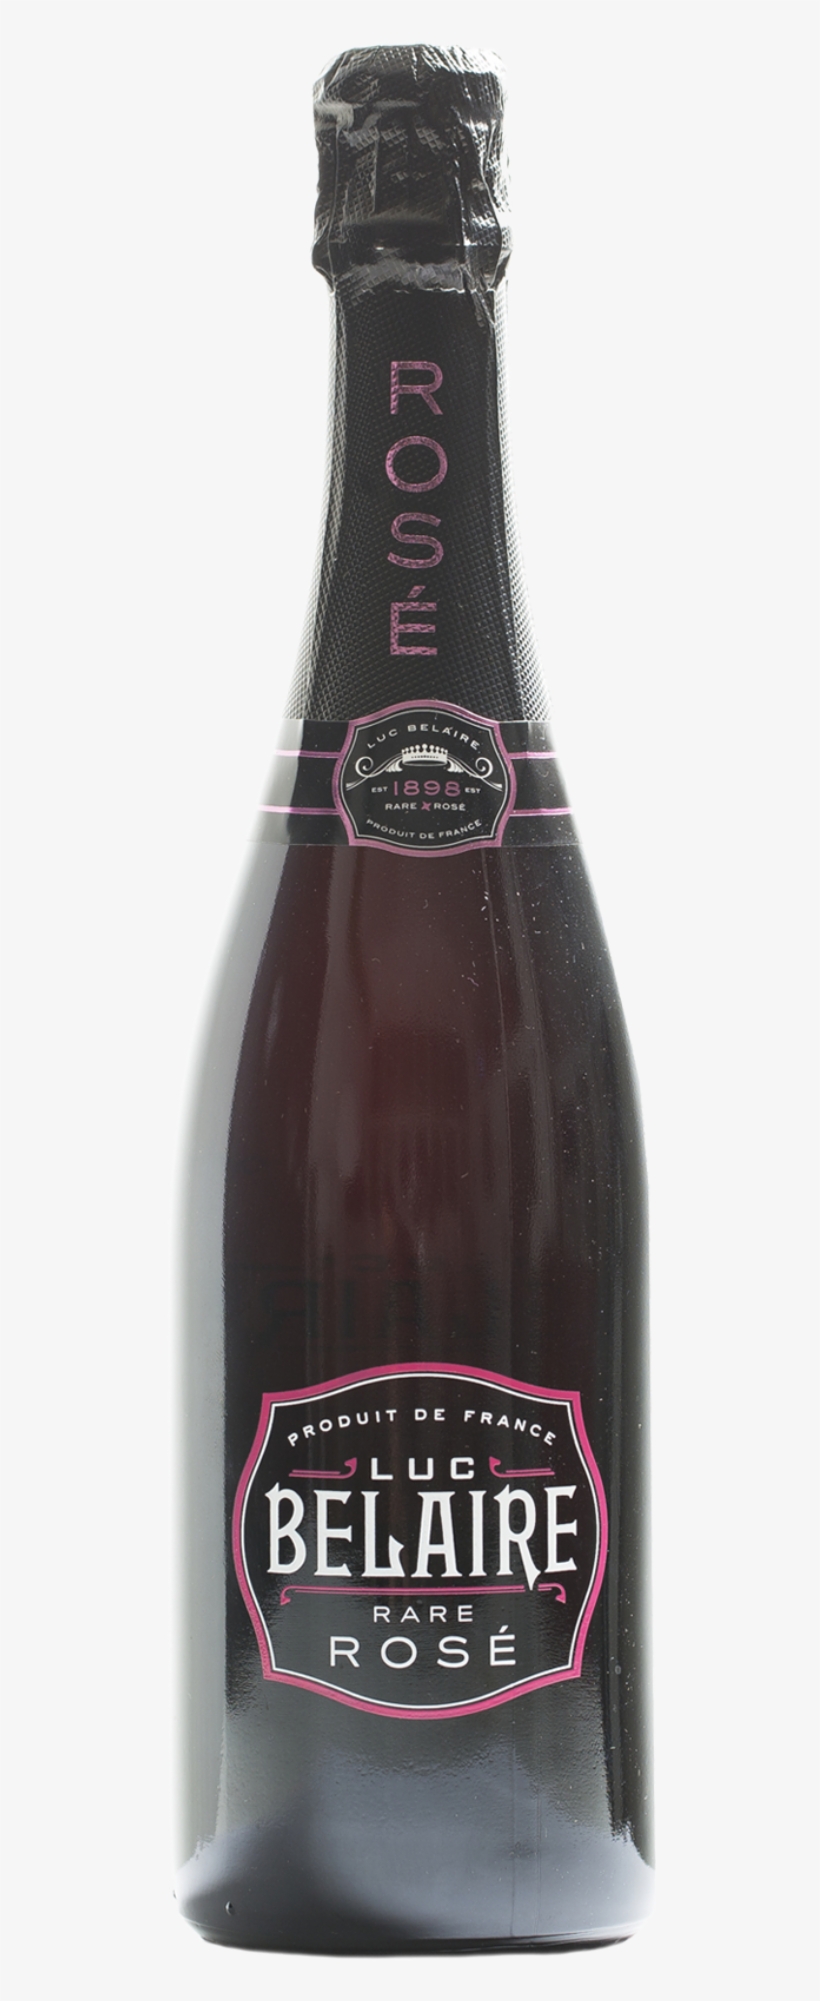 Luc Belaire Rosé - Luc Belaire Rare Rose Sparkling Wine - 1.5 L Bottle, transparent png #4973826